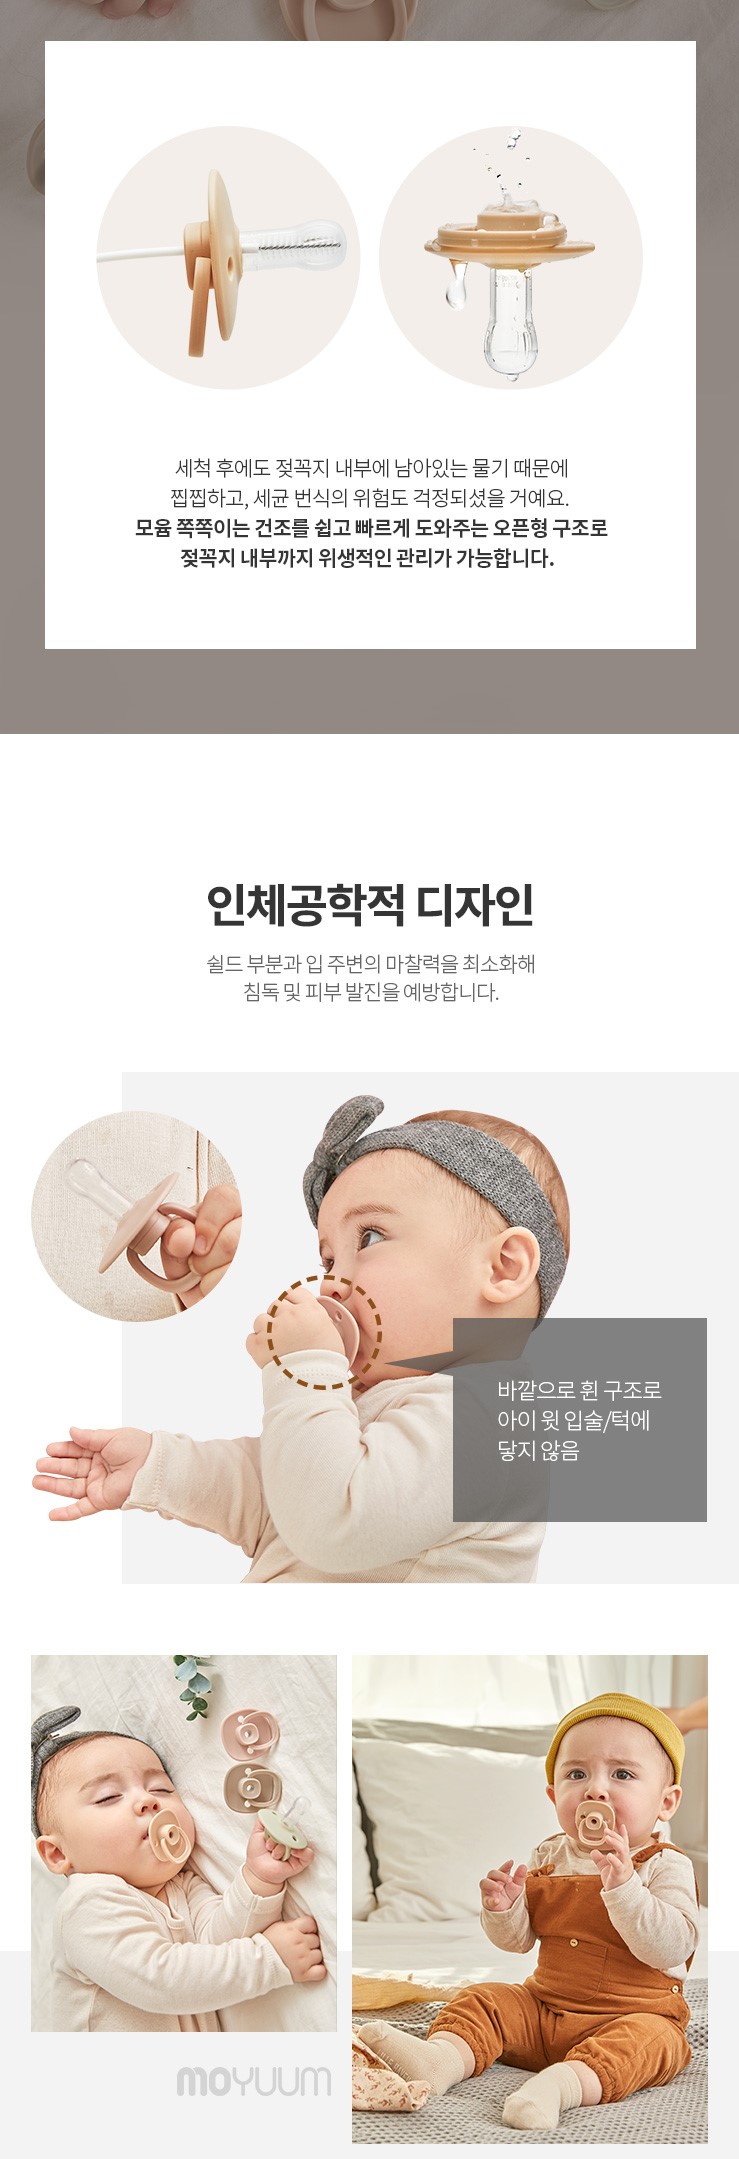 韓國食品-[Moyuum] 矽膠奶嘴 (六個月以上) 1ea